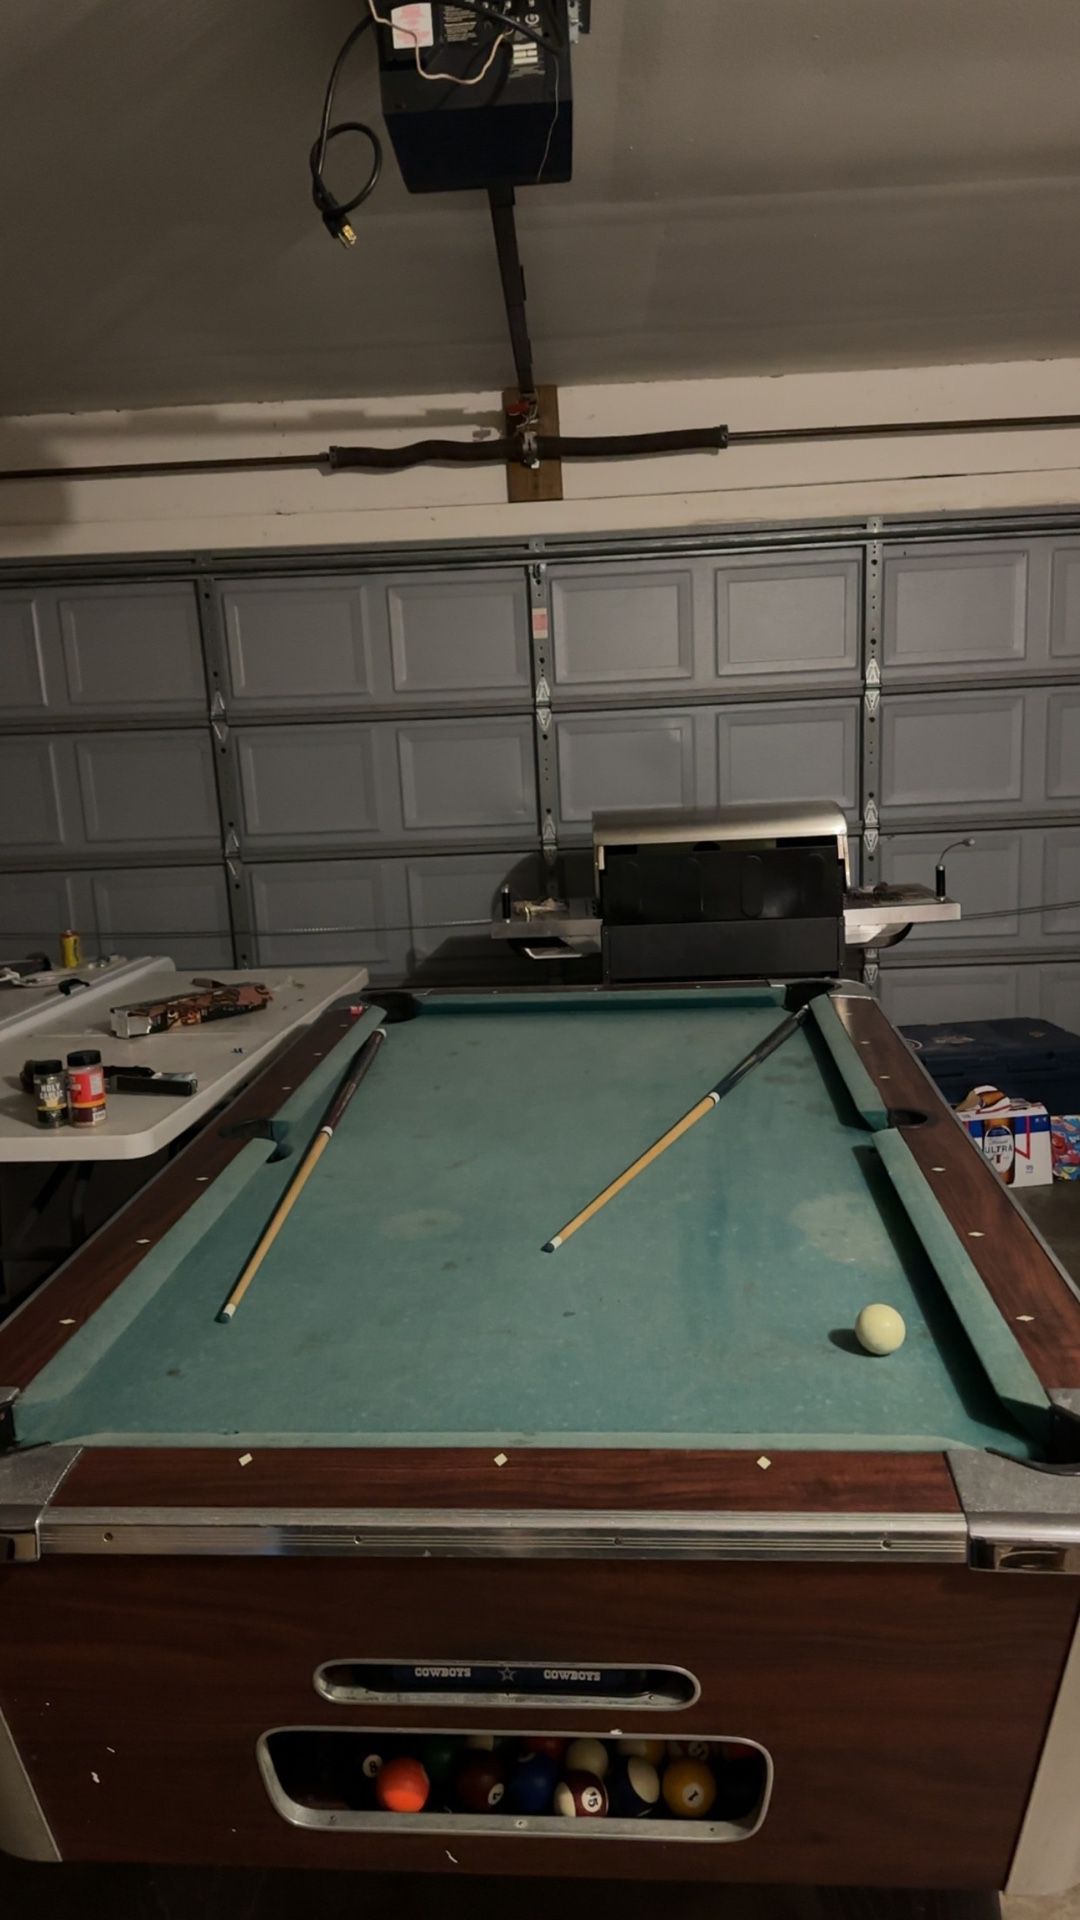 Billiards Pool Table